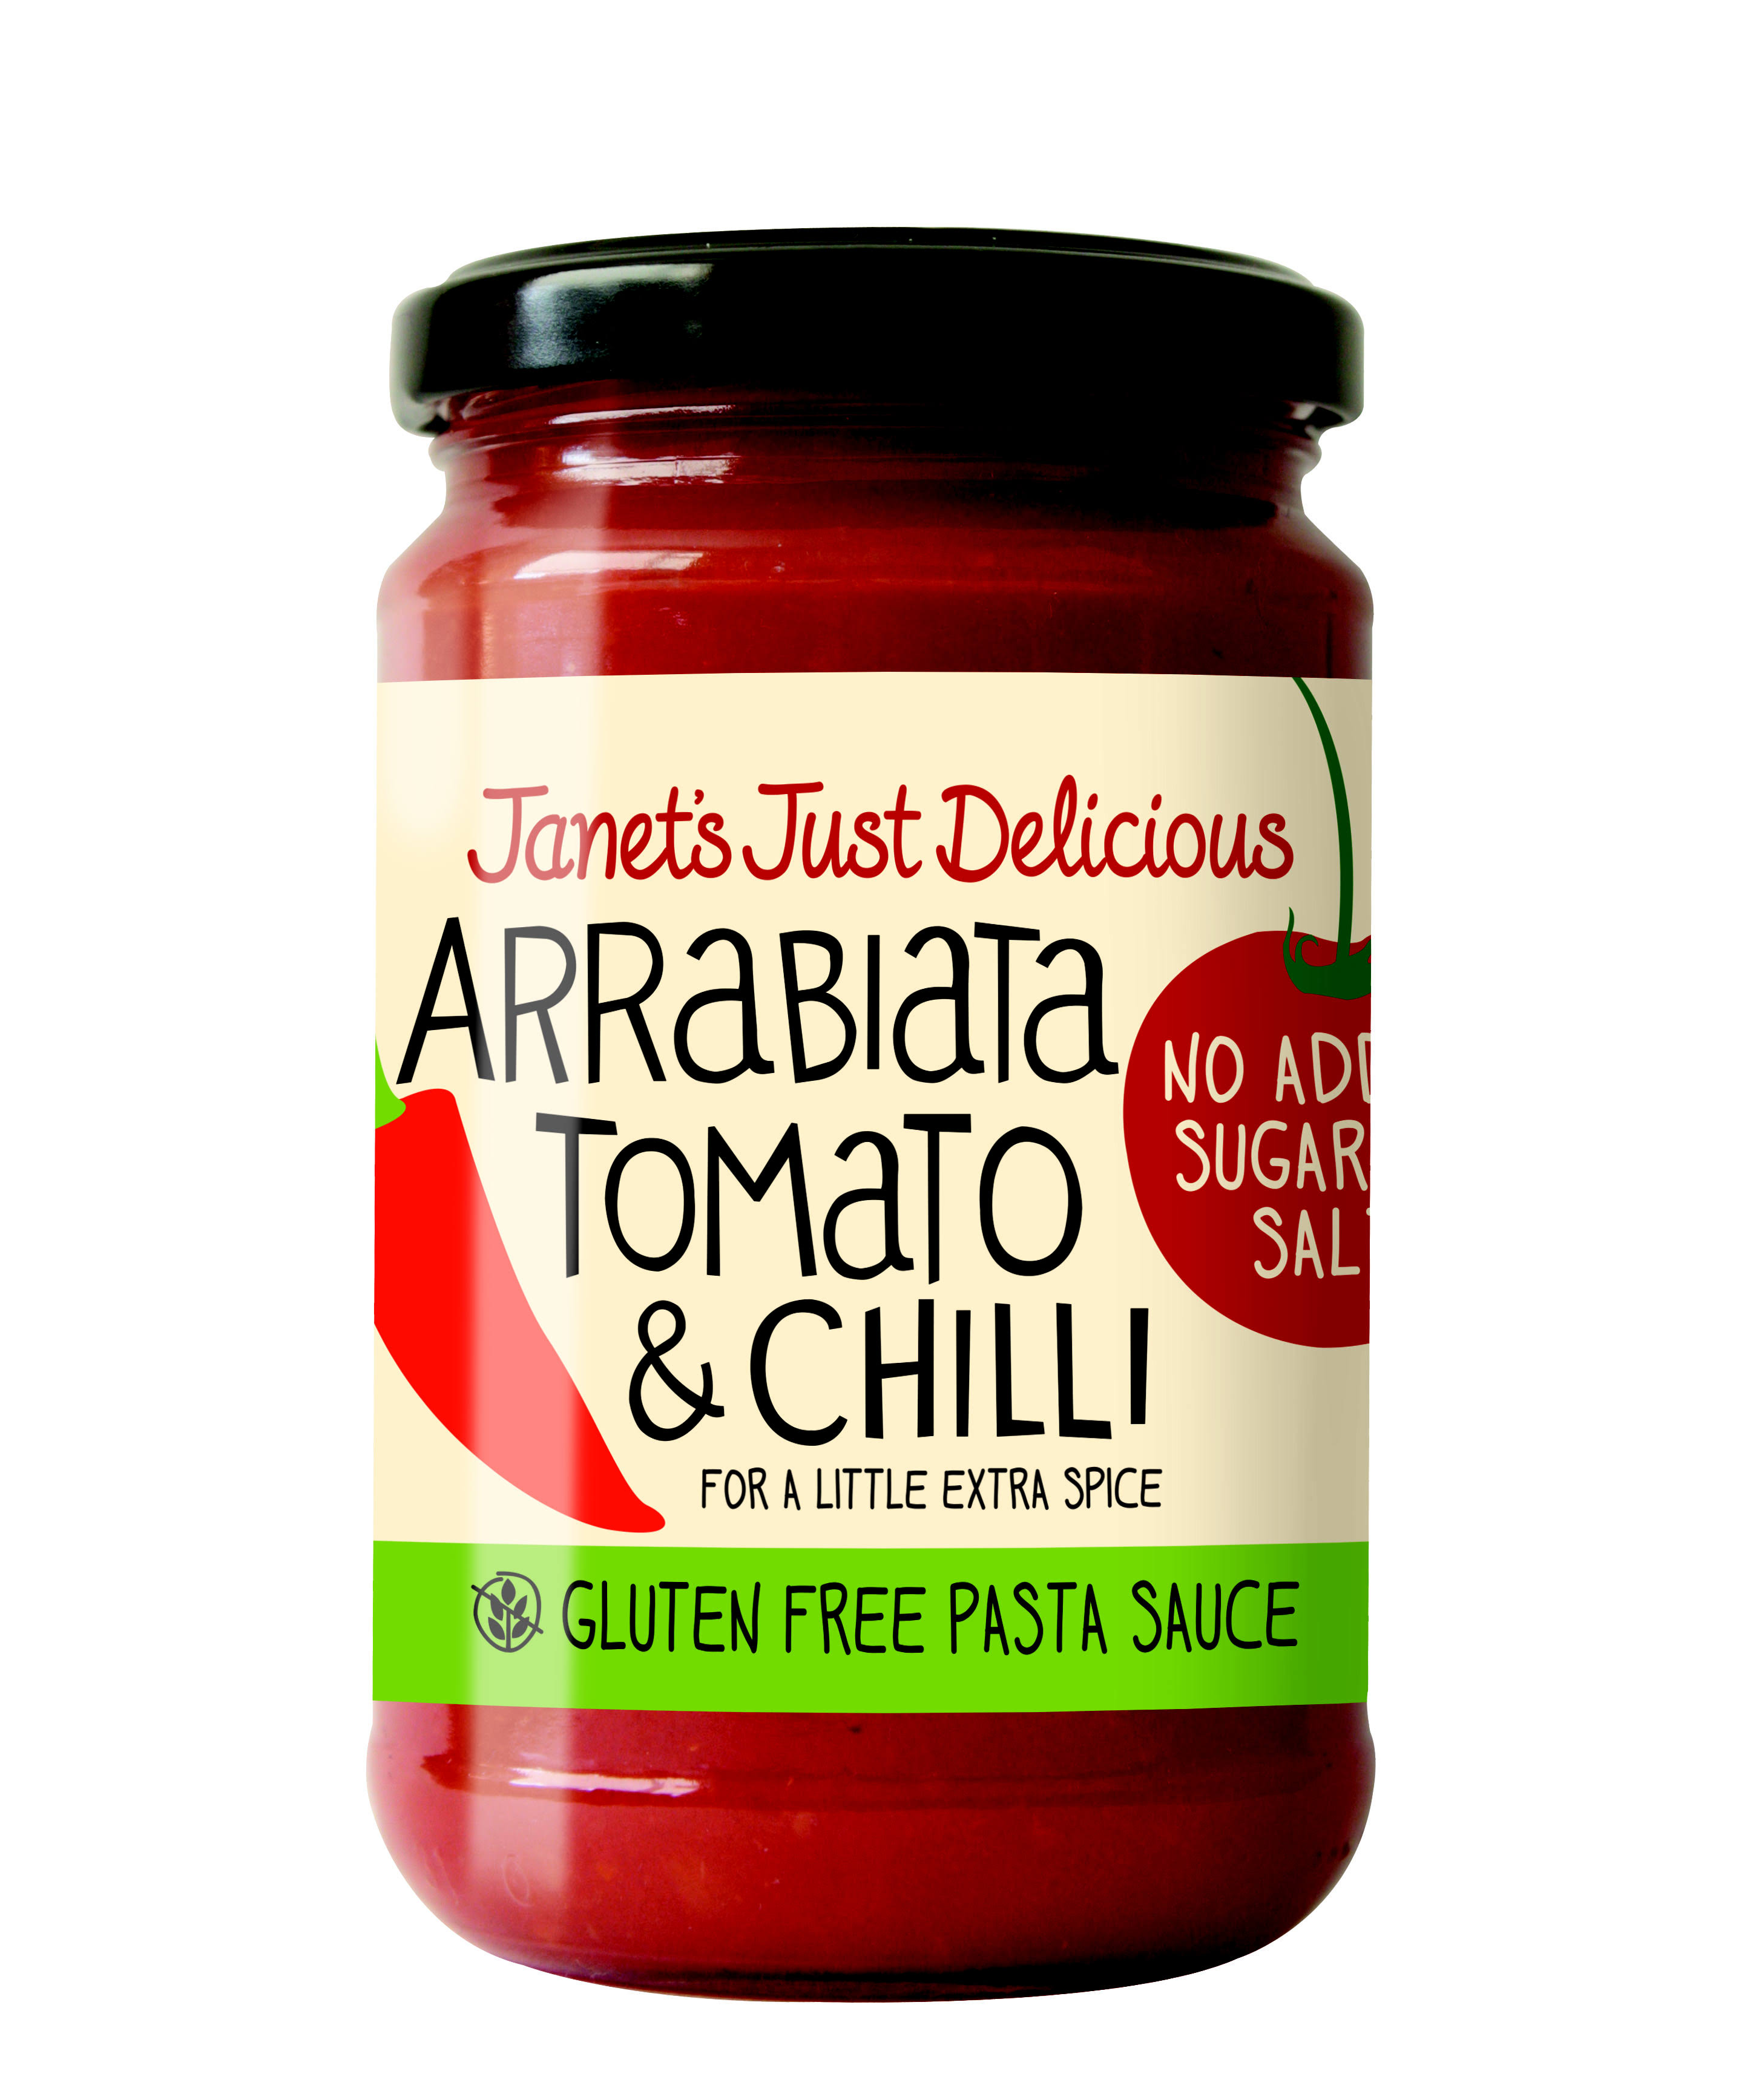 Janet's Just Delicious Gluten Free Pasta Sauce - Arrabiata Tomato and Chilli, 350g